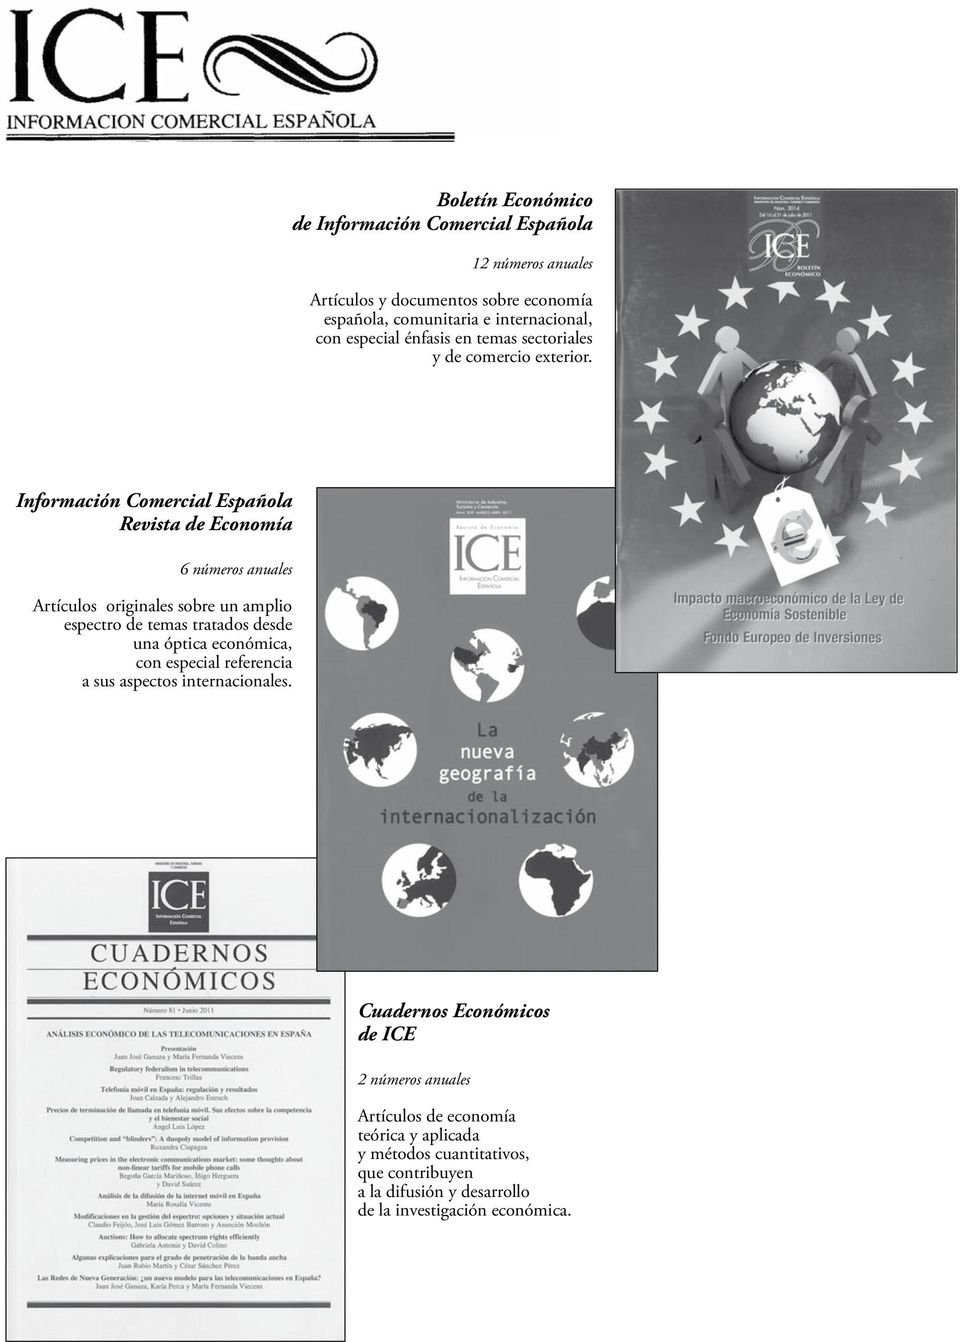 Información Comercial Española Revista de Economía 6 números anuales Artículos originales sobre un amplio espectro de temas tratados desde una óptica